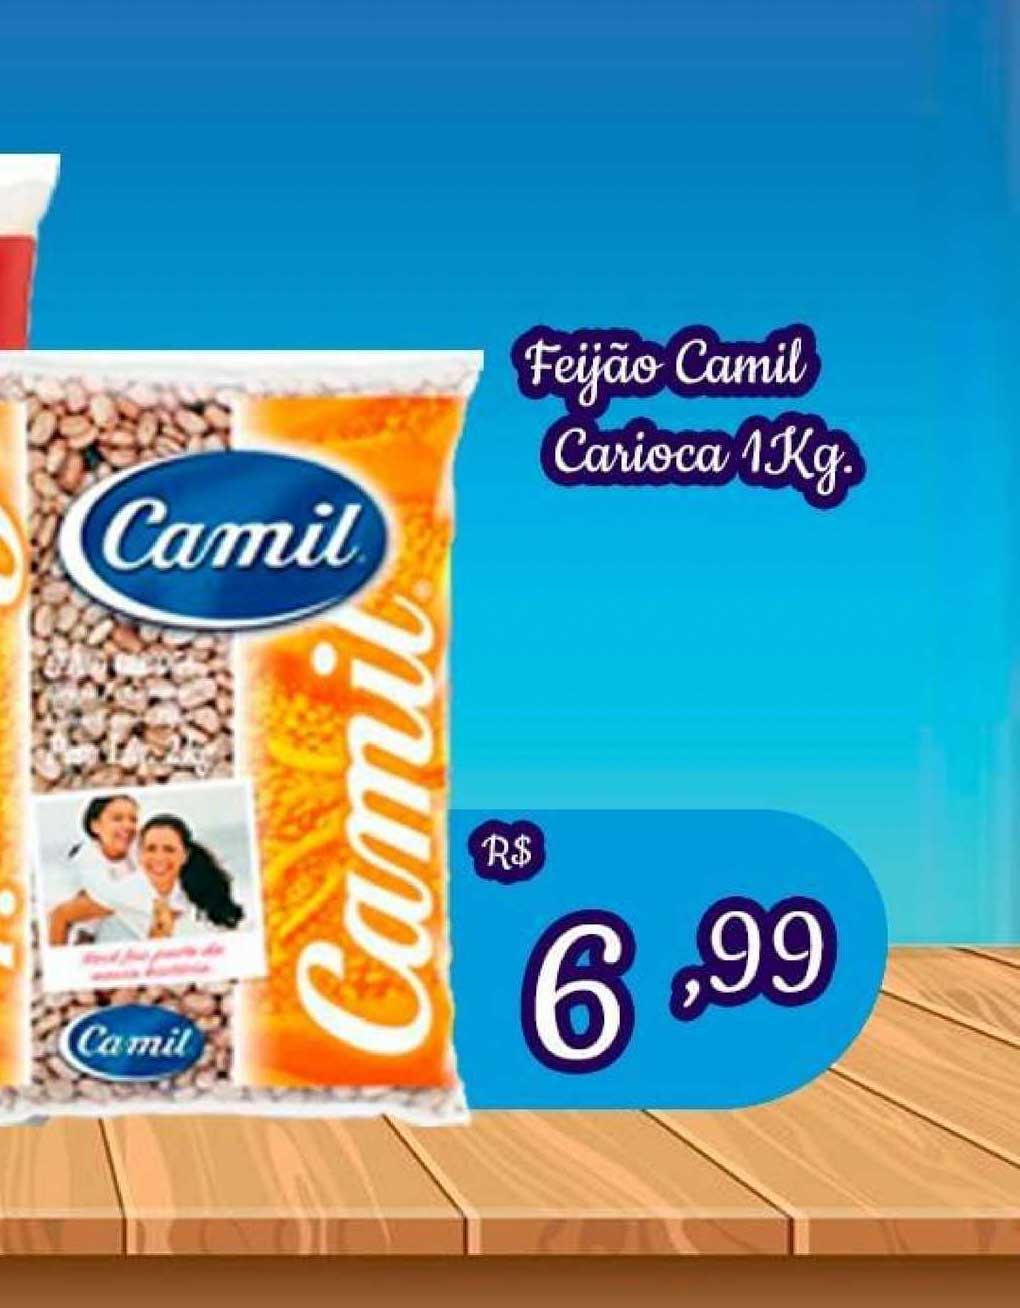 Camil Feijão Carioca 1kg